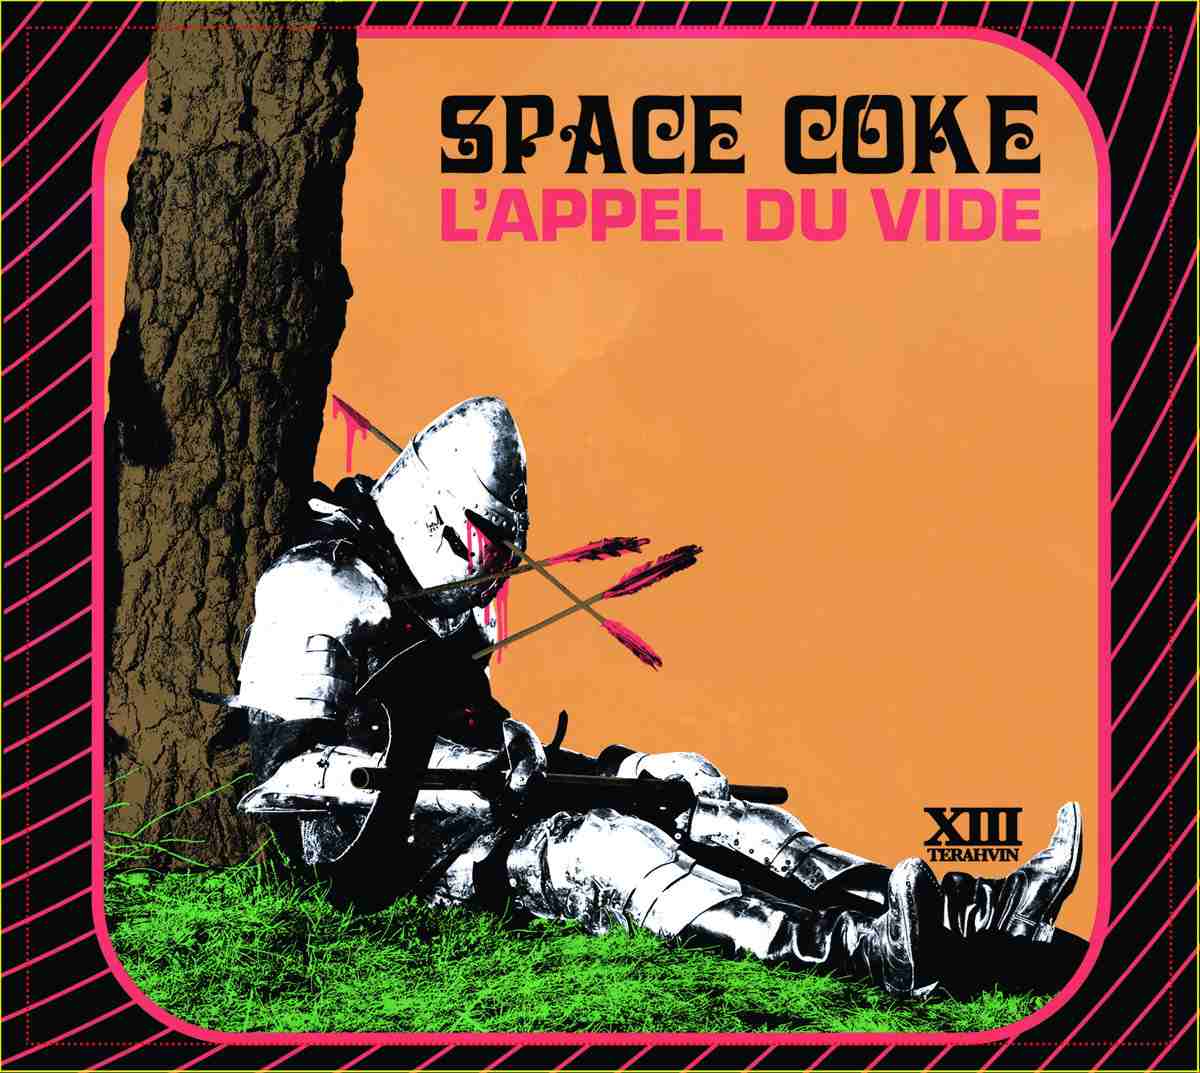 SPACE COKE - L'appel du vide cover 